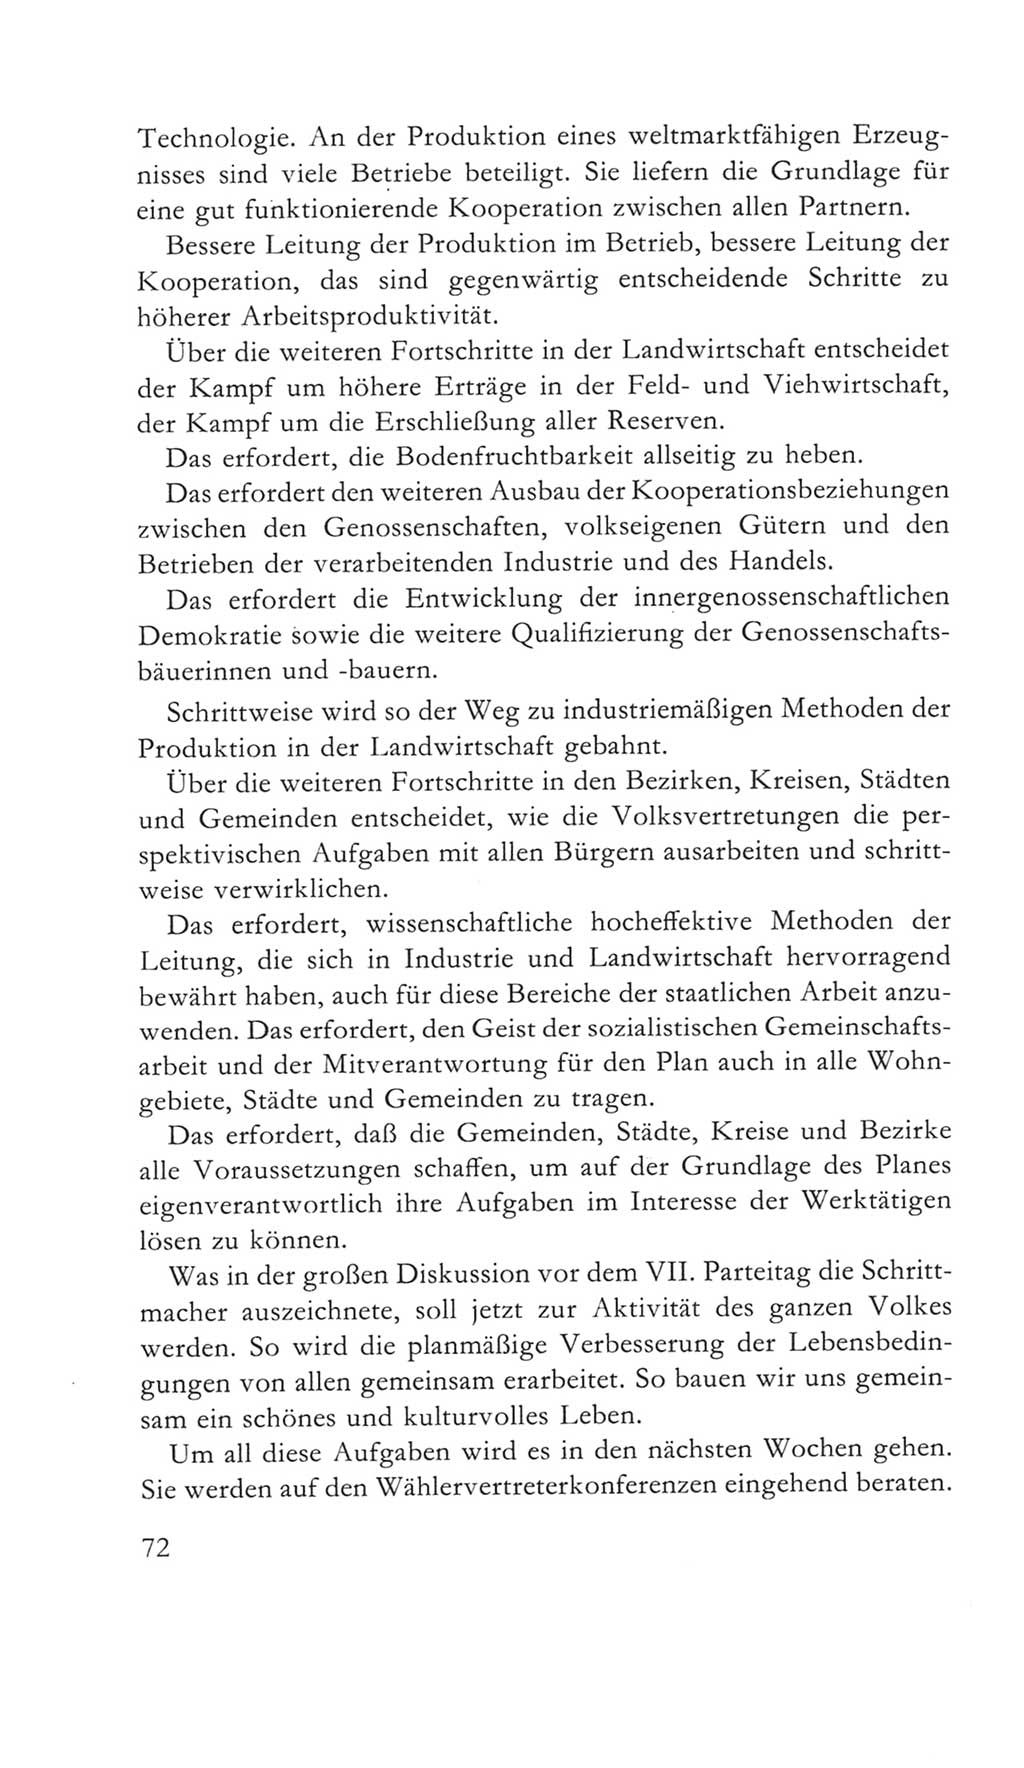 Volkskammer (VK) der Deutschen Demokratischen Republik (DDR) 5. Wahlperiode 1967-1971, Seite 72 (VK. DDR 5. WP. 1967-1971, S. 72)